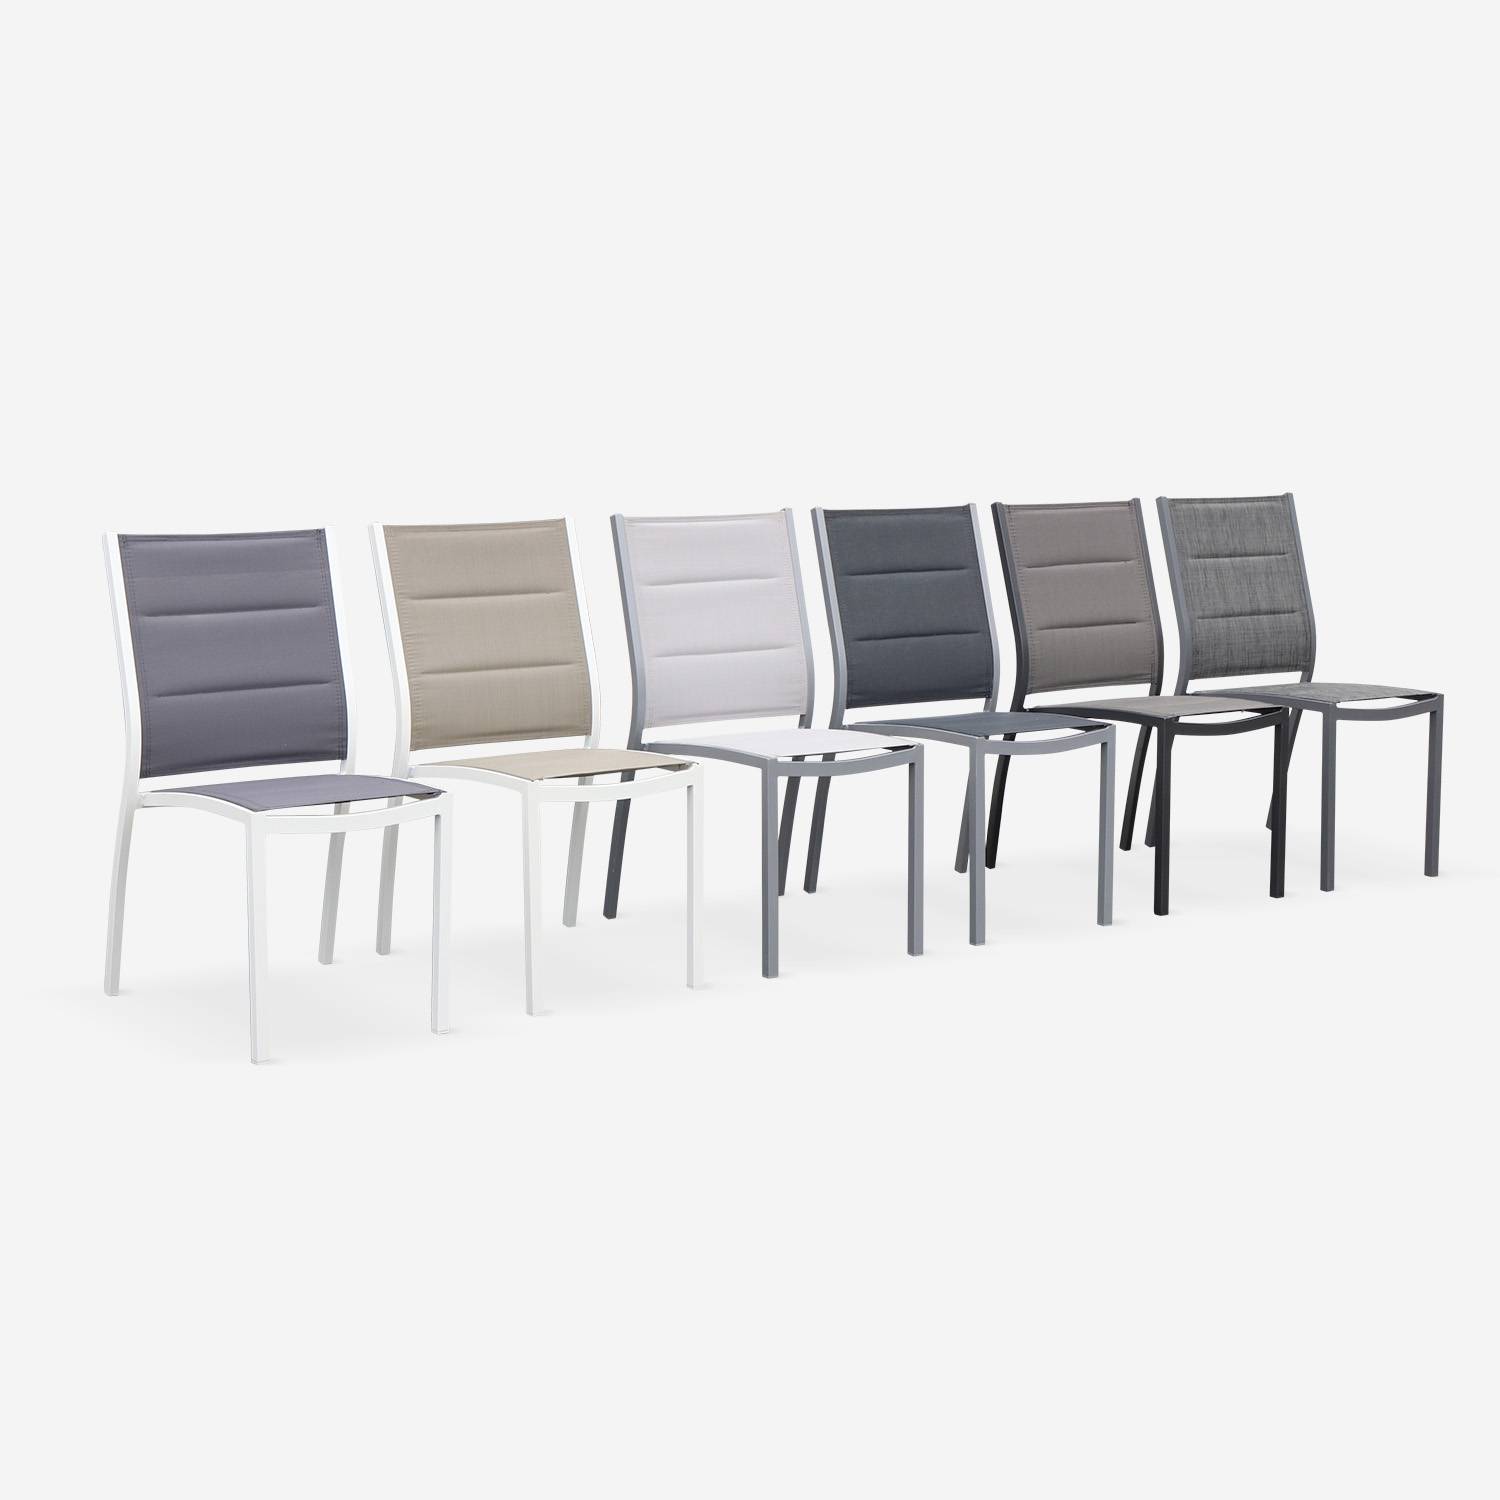 Coppia di sedie Chicago/Odenton in alluminio bianco e textilene colore marrone talpa Photo4